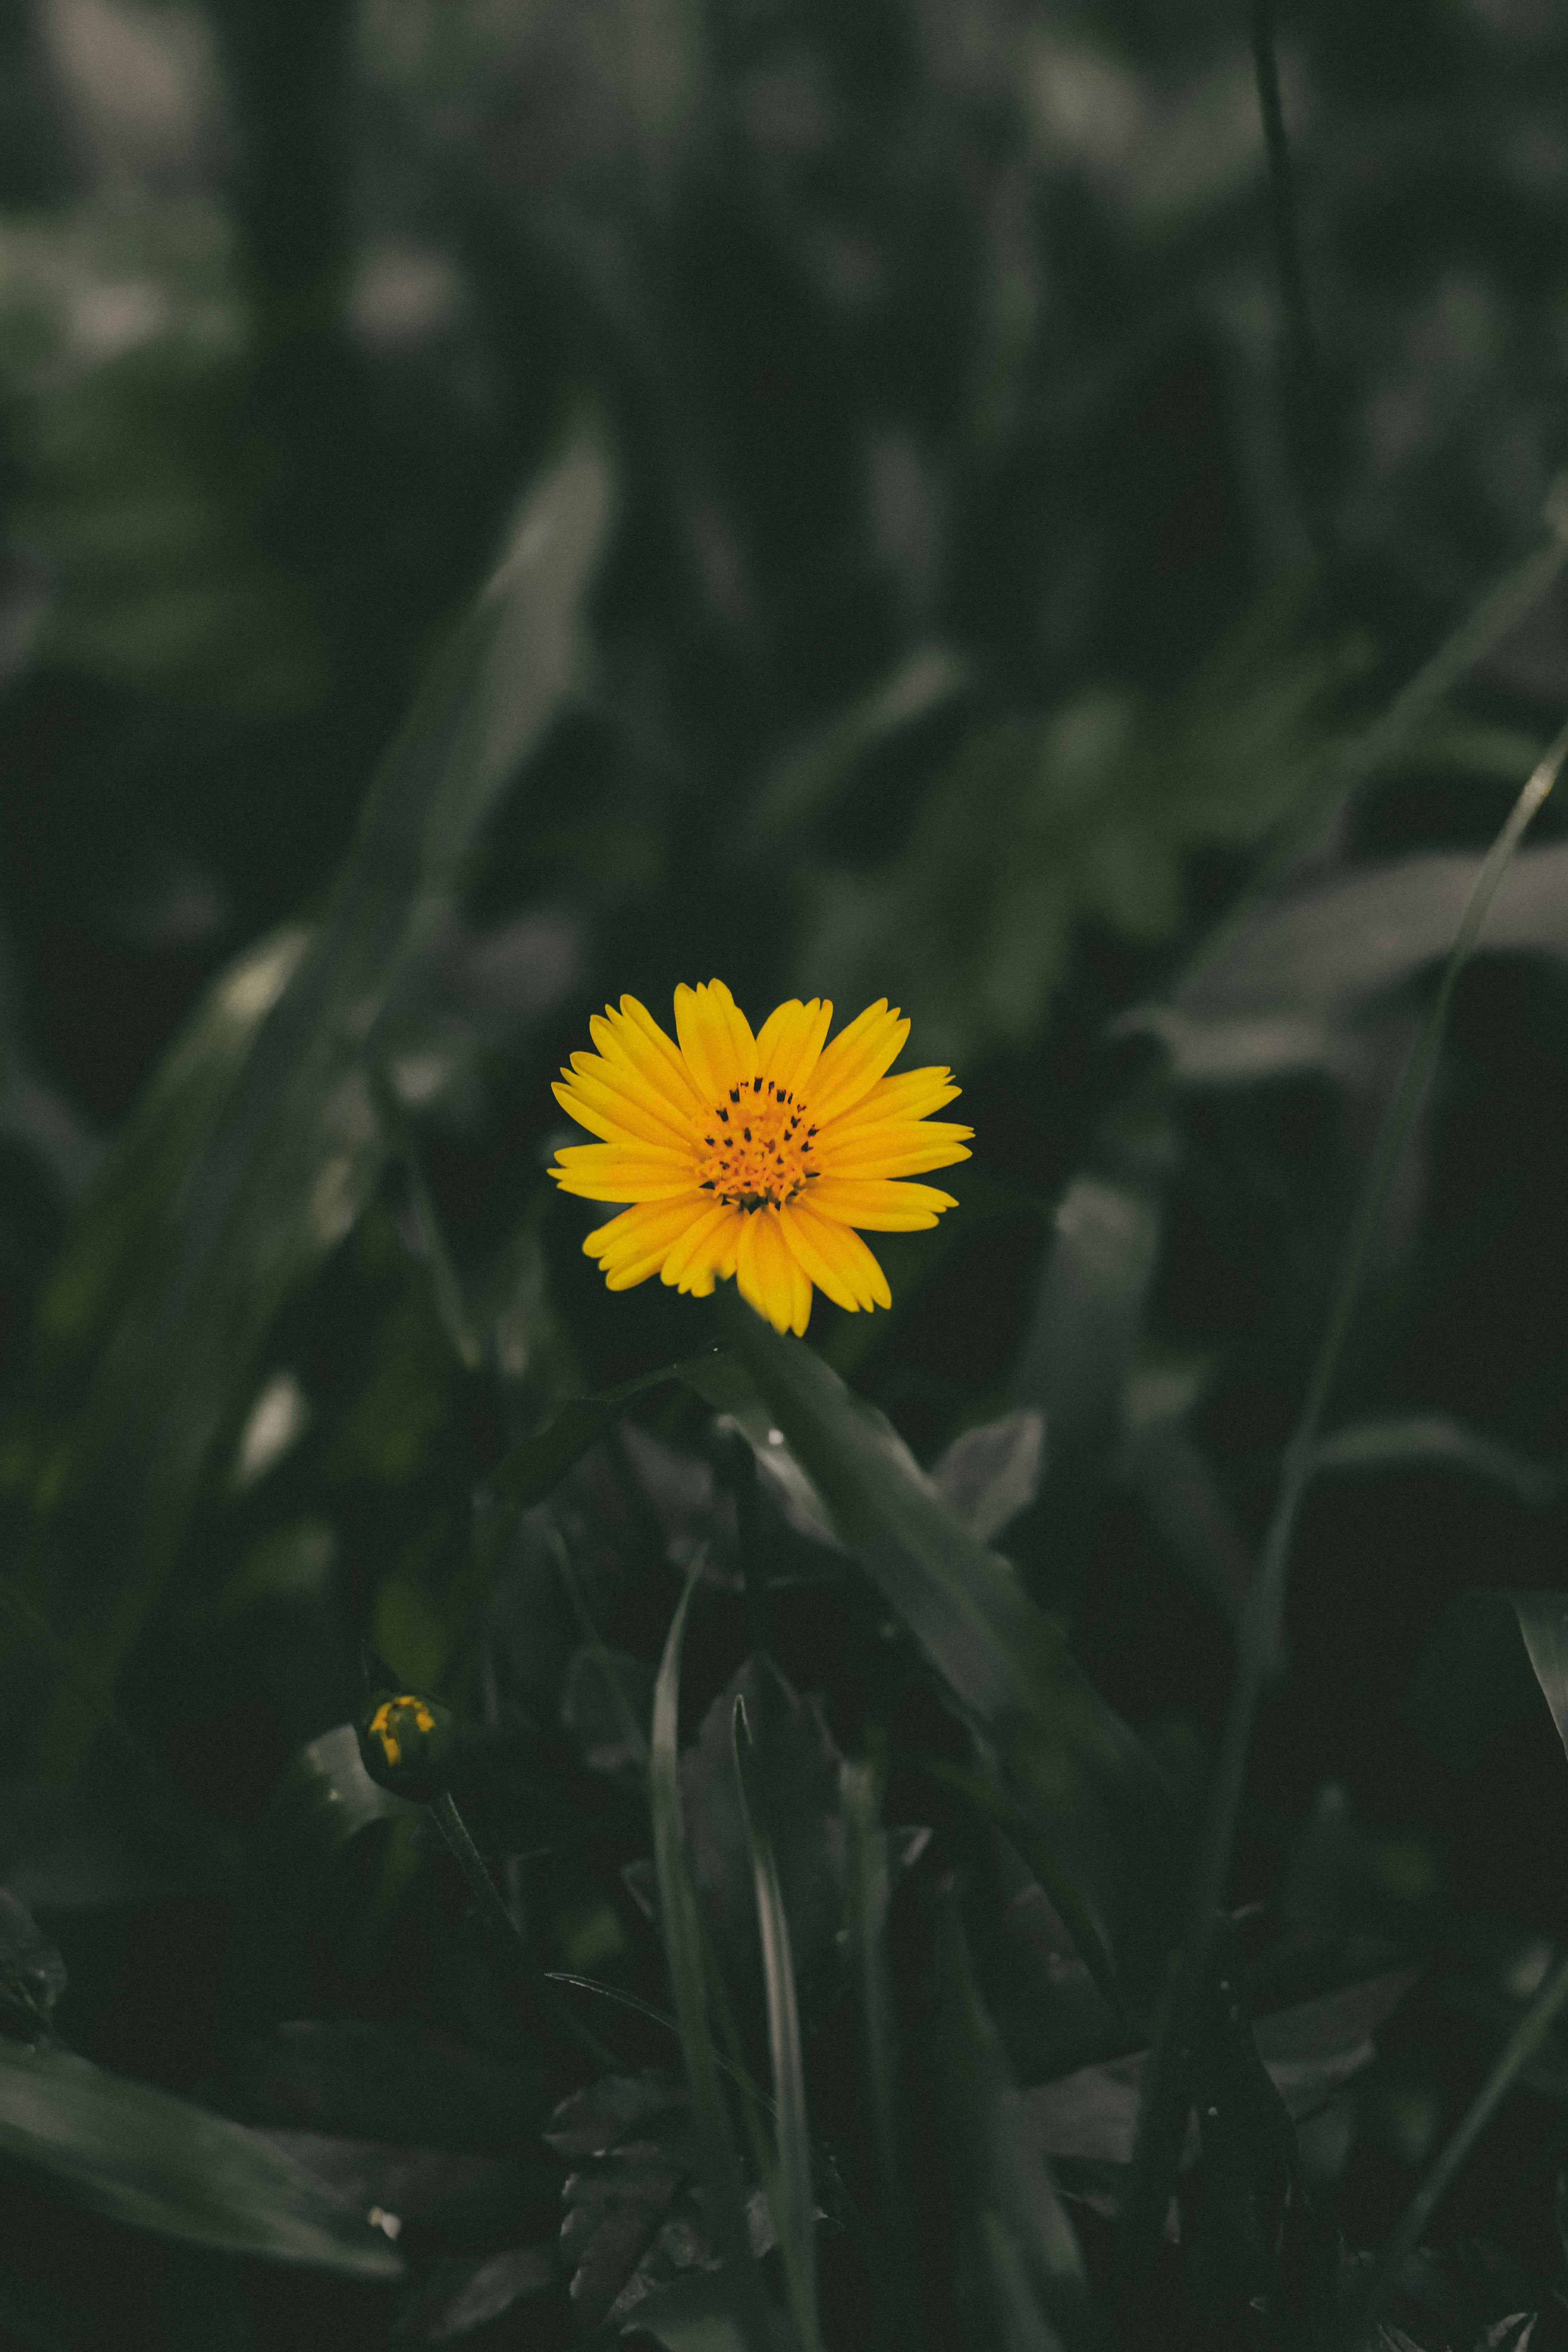 Hoa vàng cận cảnh miễn phí sẽ làm nổi bật điện thoại của bạn với những tông màu rực rỡ và sáng tạo. Hãy tận hưởng một khoảnh khắc yên bình với những hình ảnh hoa vàng rực rỡ này và tạo nên không gian độc đáo cho điện thoại của bạn.